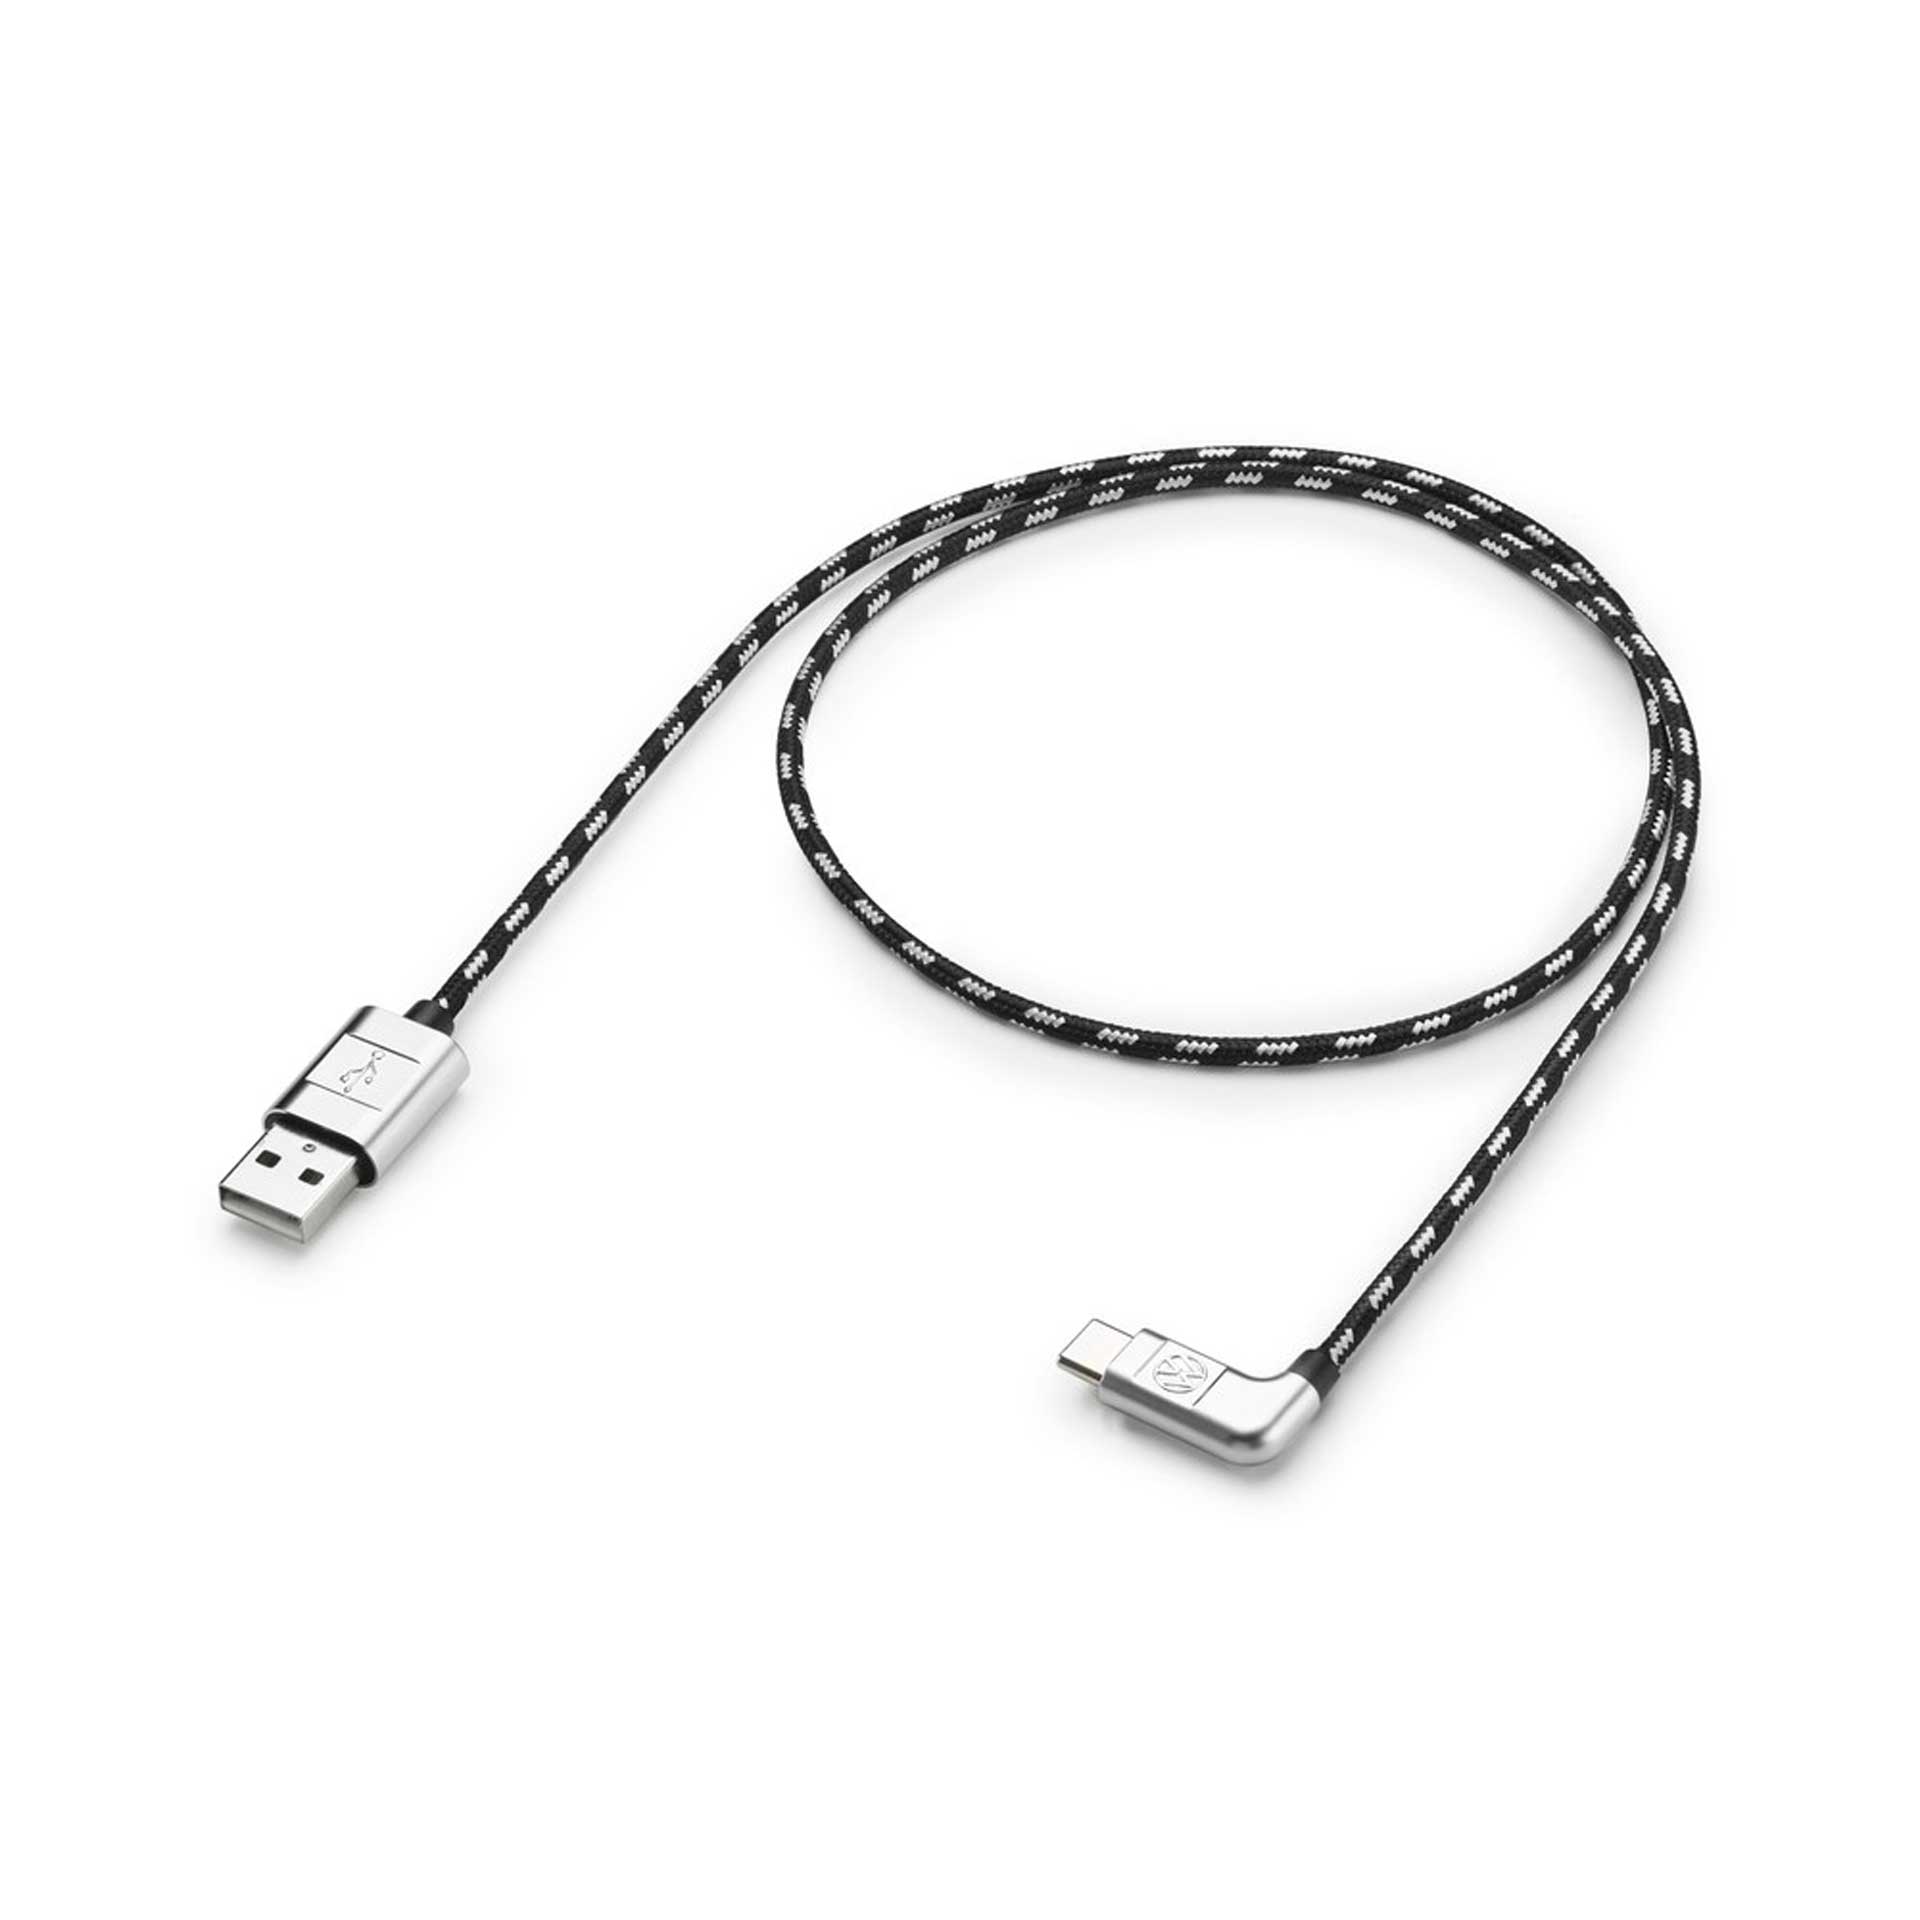 Volkswagen Anschlusskabel Ladekabel USB-A auf USB-C Premium Kabel gewinkelt 70 cm